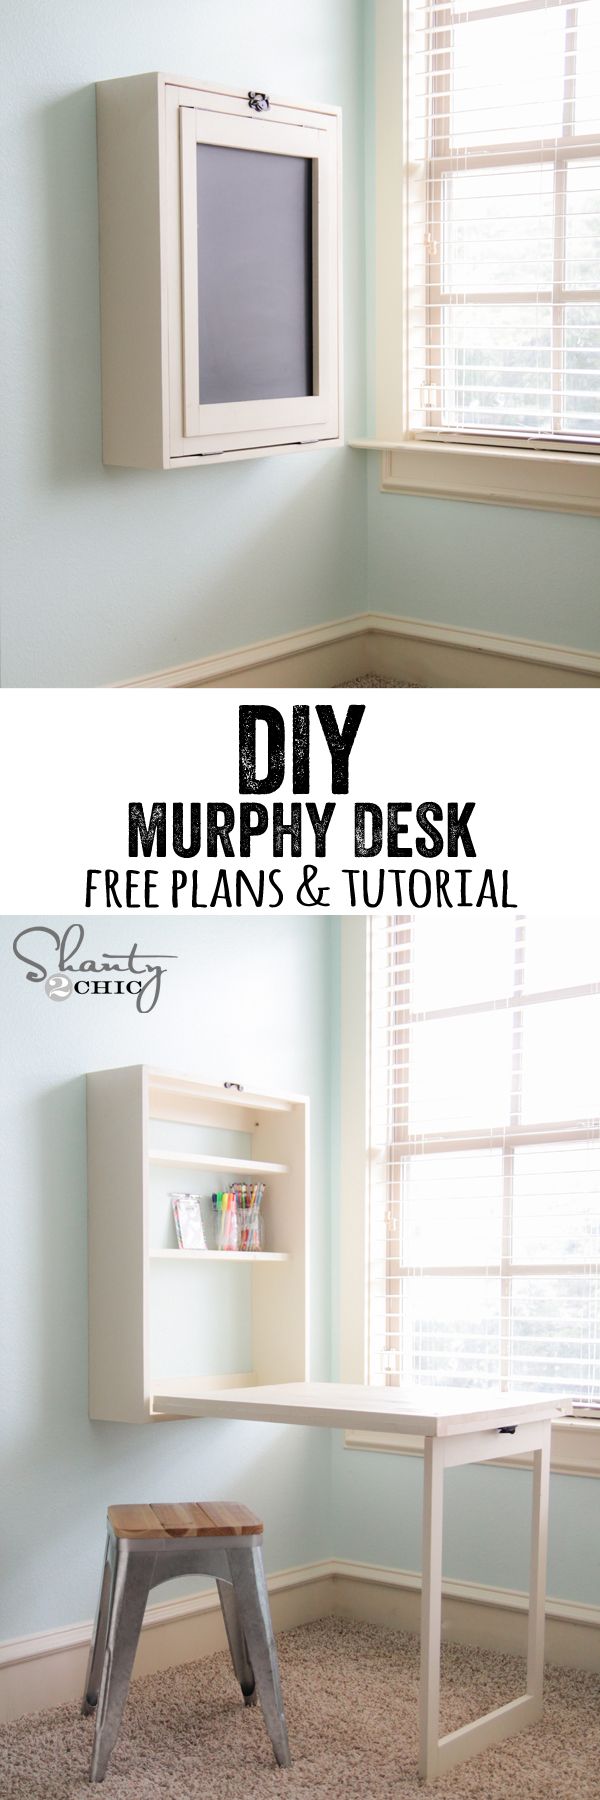 DIY Murphy Desk